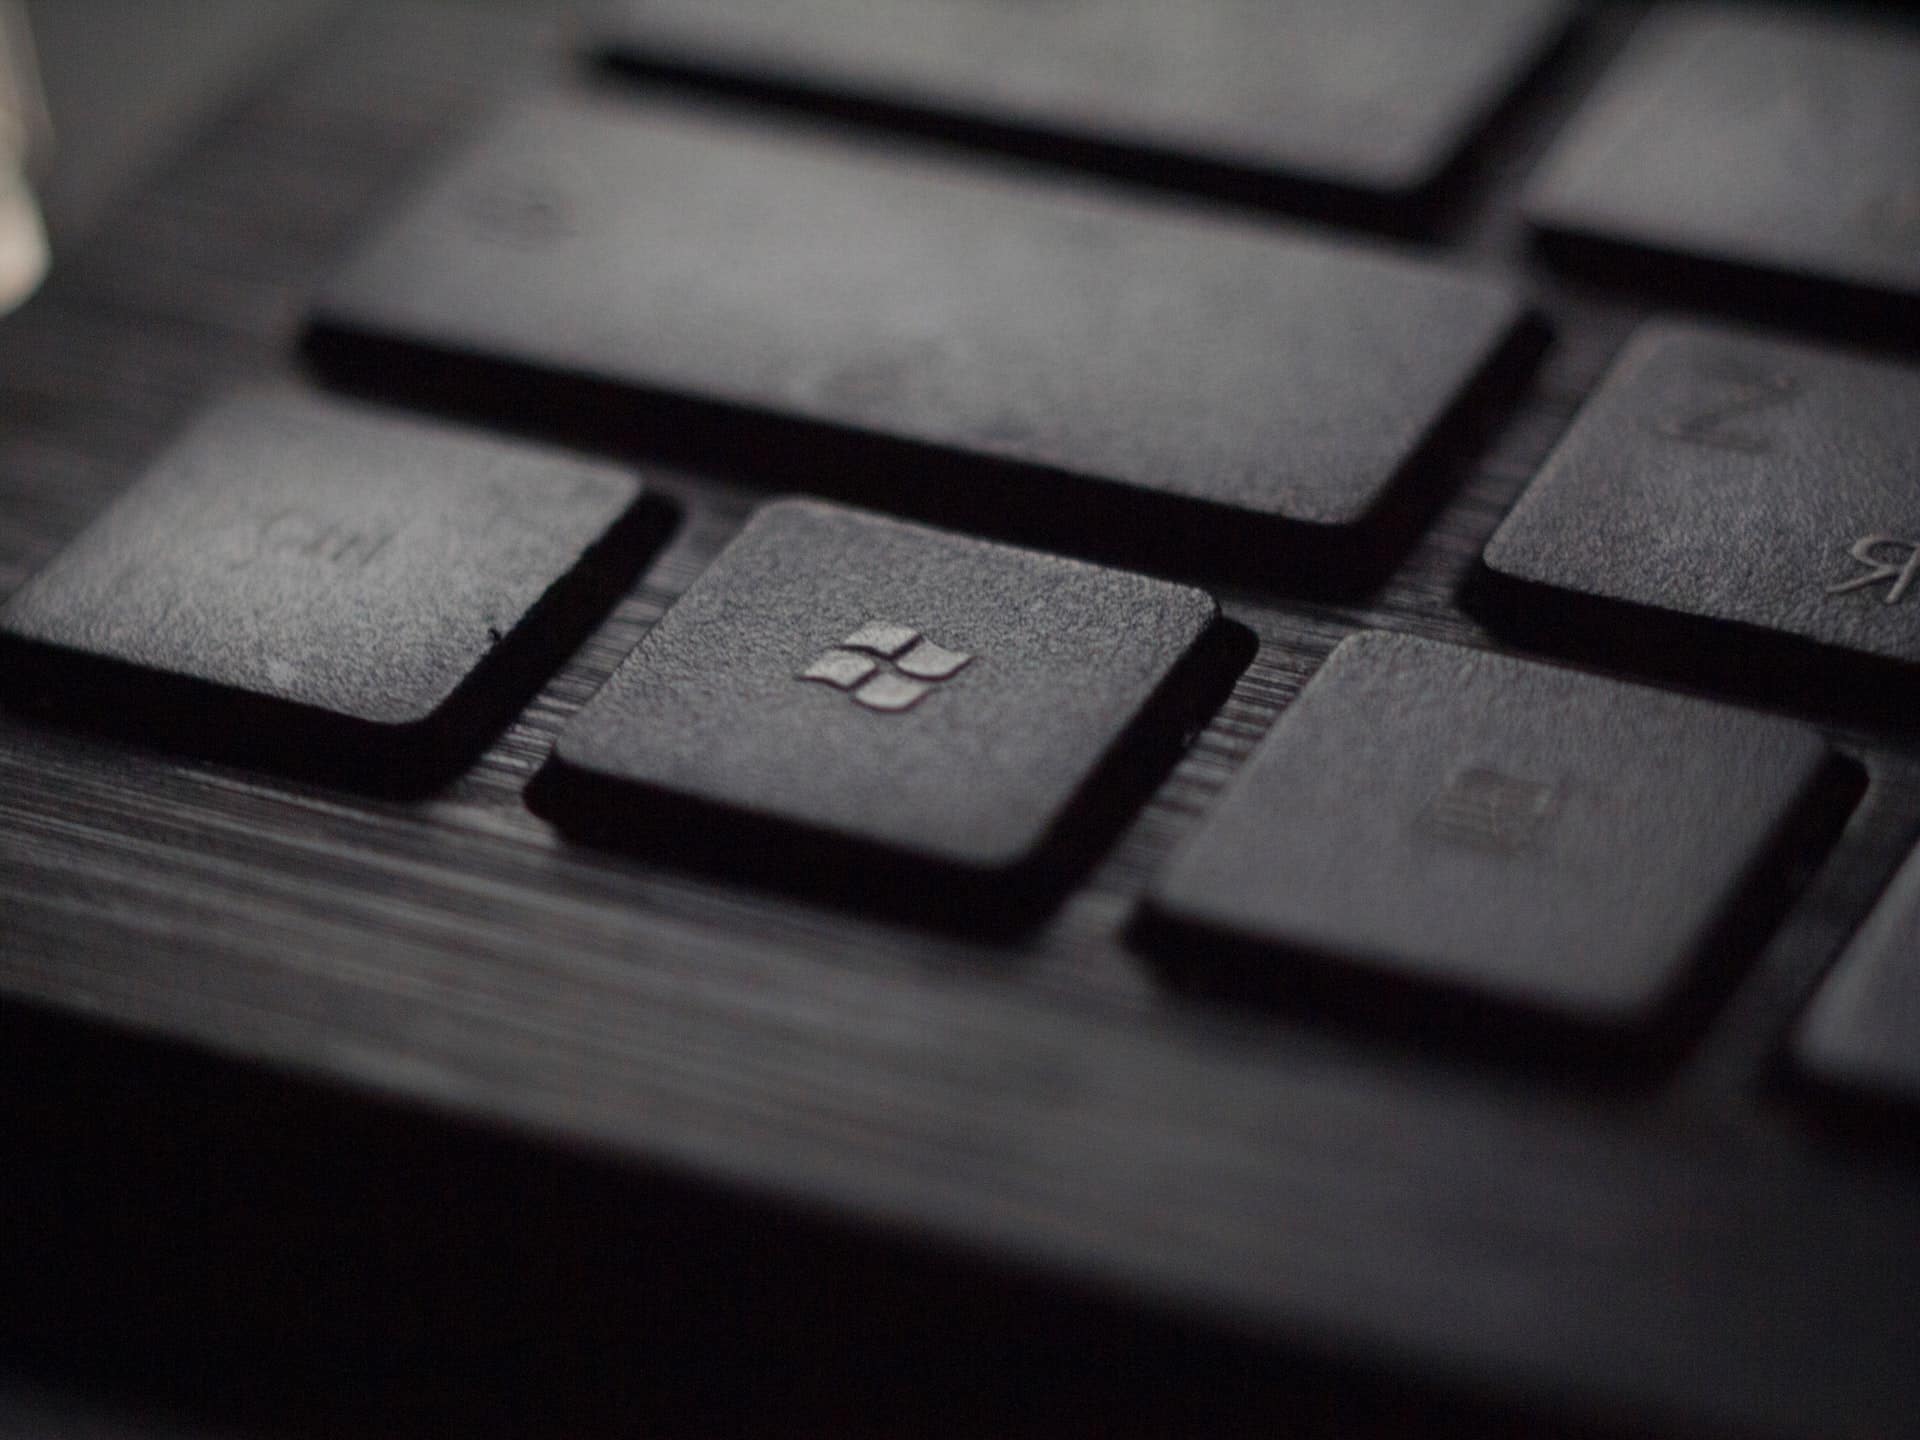 une touche de clavier avec le logo windows